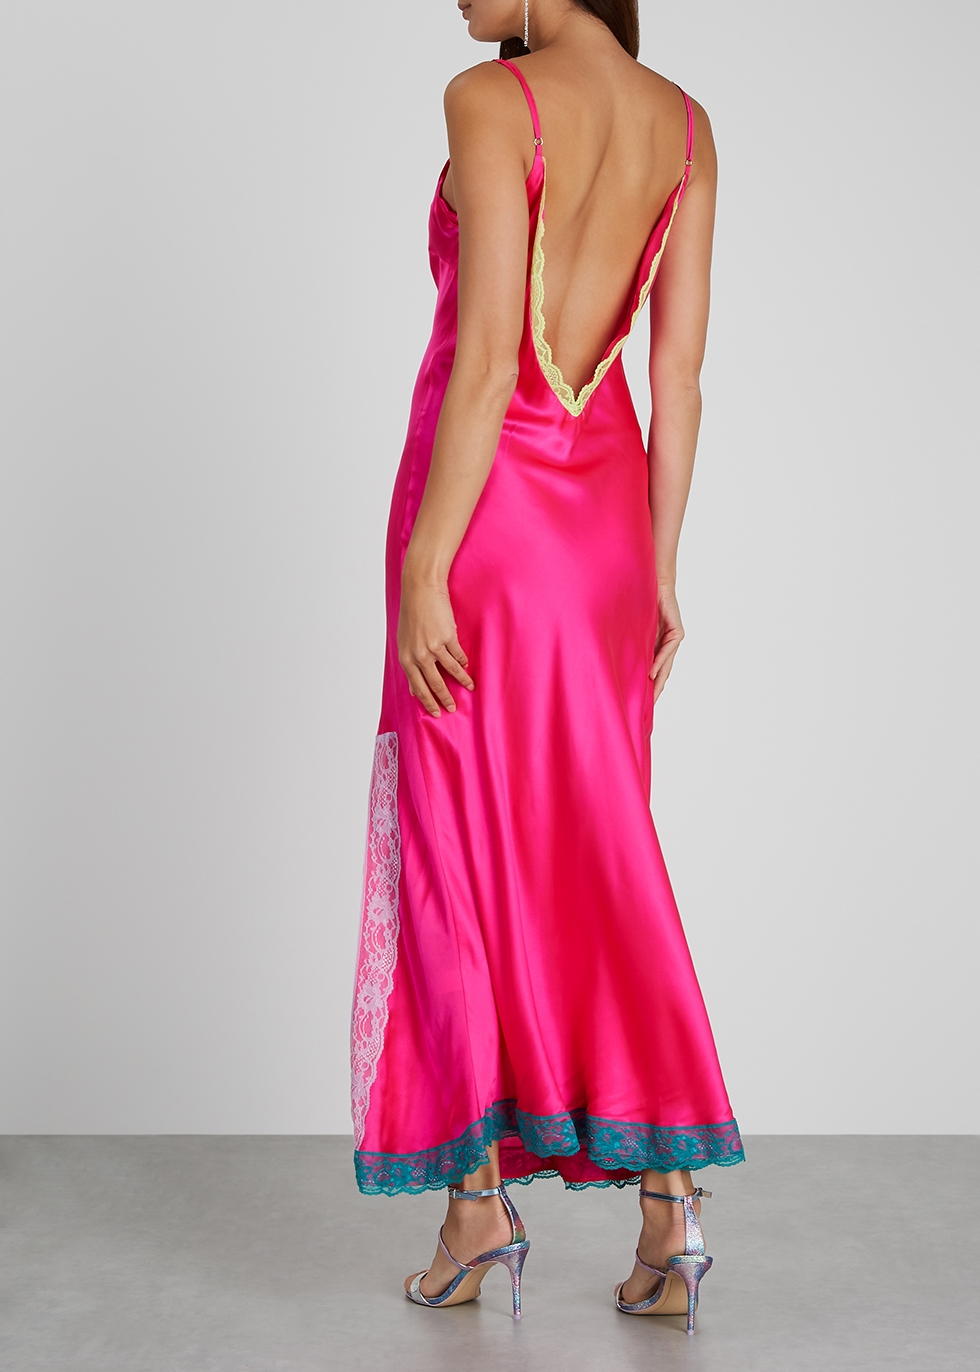 silk hot pink dress